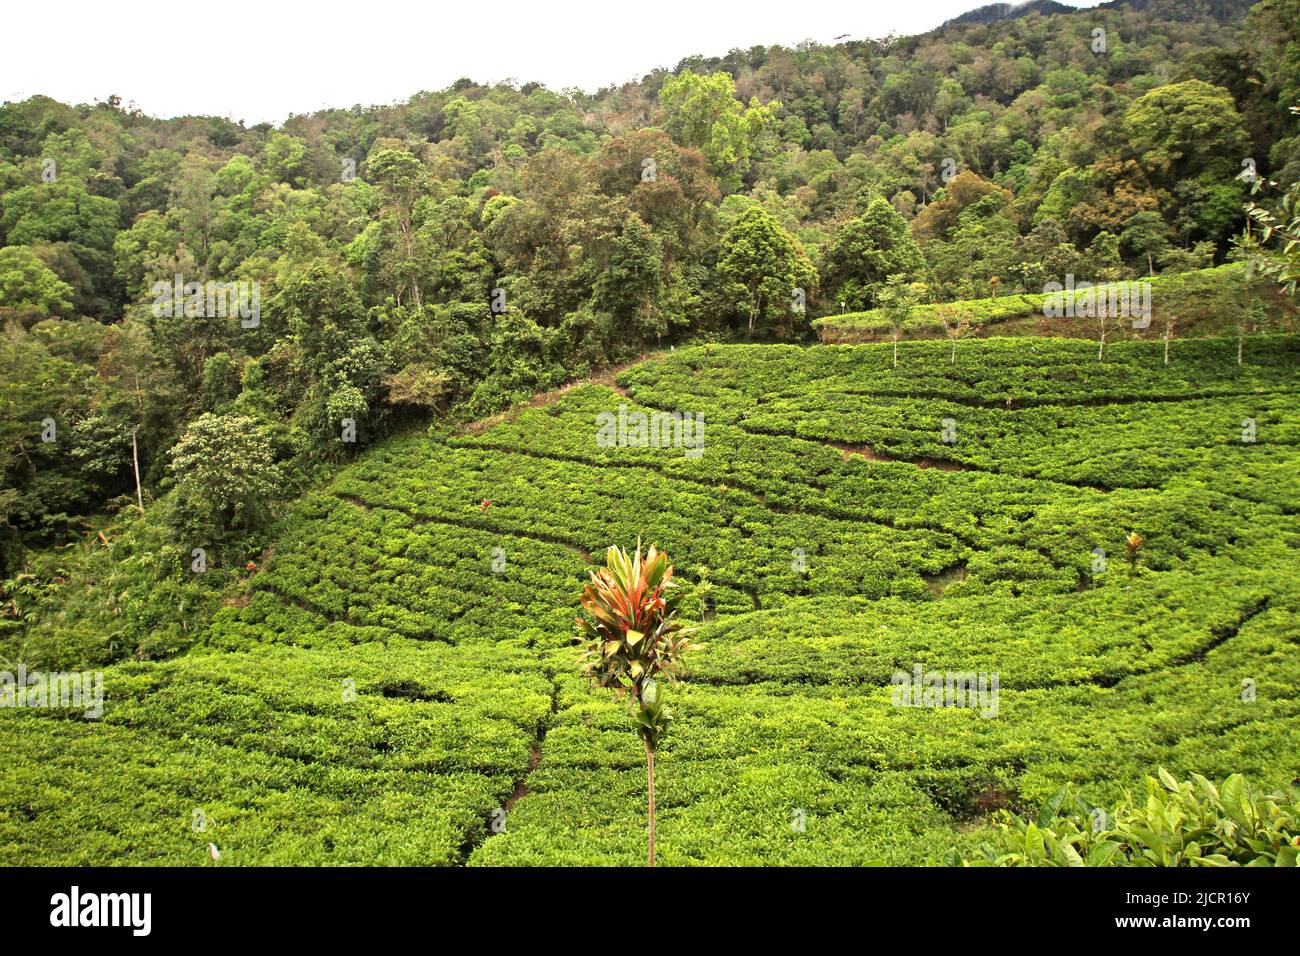 Teeplantage am Rande des tropischen Regenwaldes in der Nähe des Gunung Halimun Salak National Park in Citalahab, Malasari, Nanggung, Bogor, West Java, Indonesien. Stockfoto